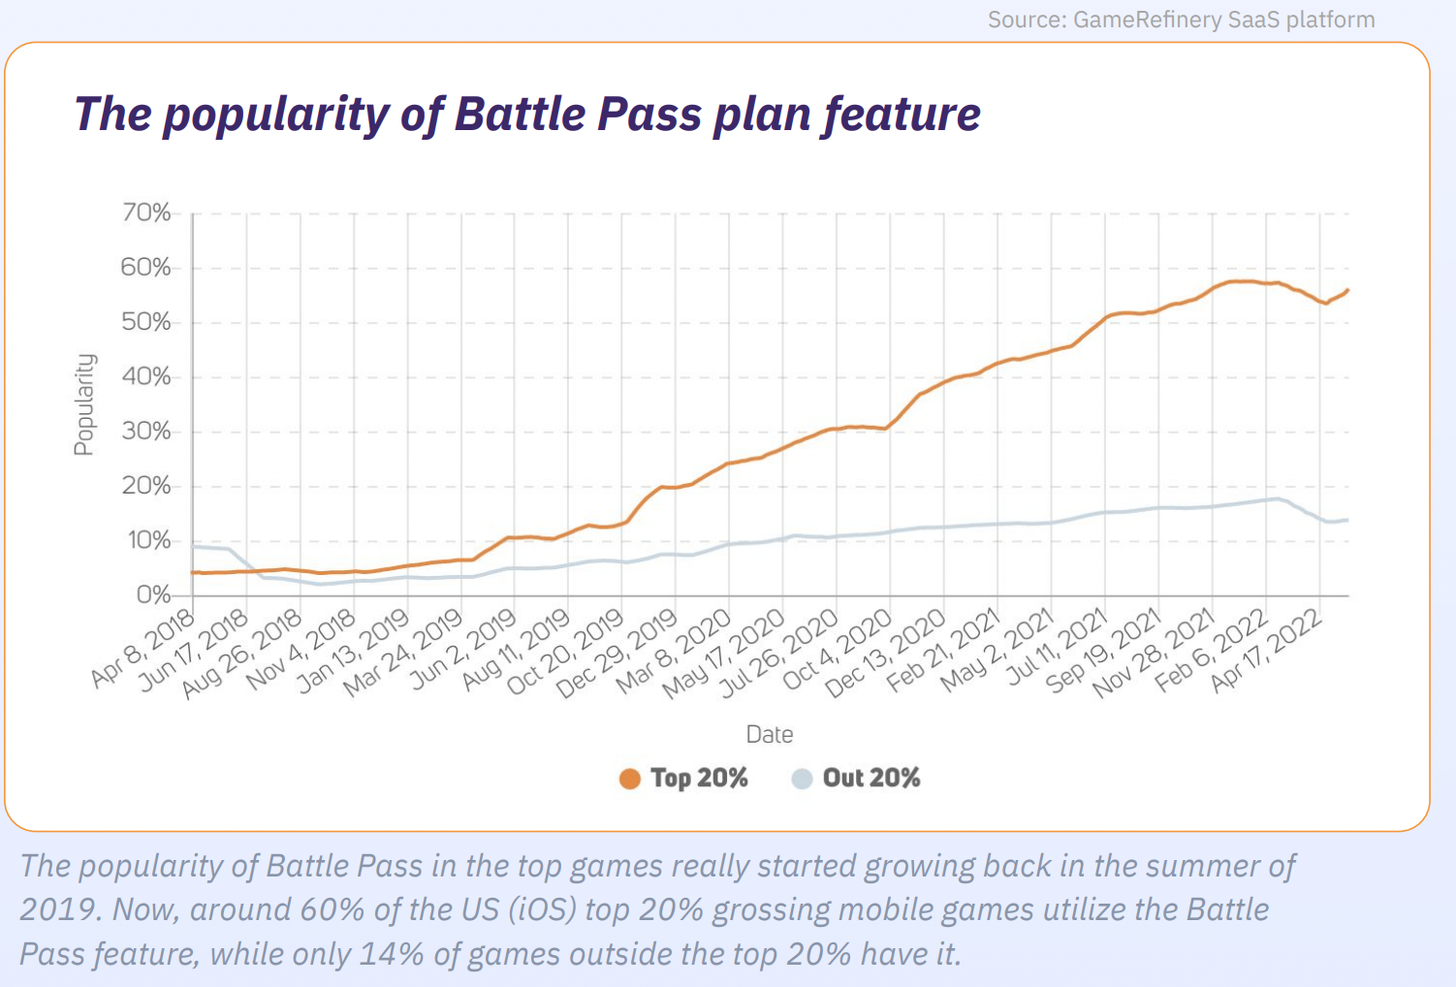 Battle pass plan popularity